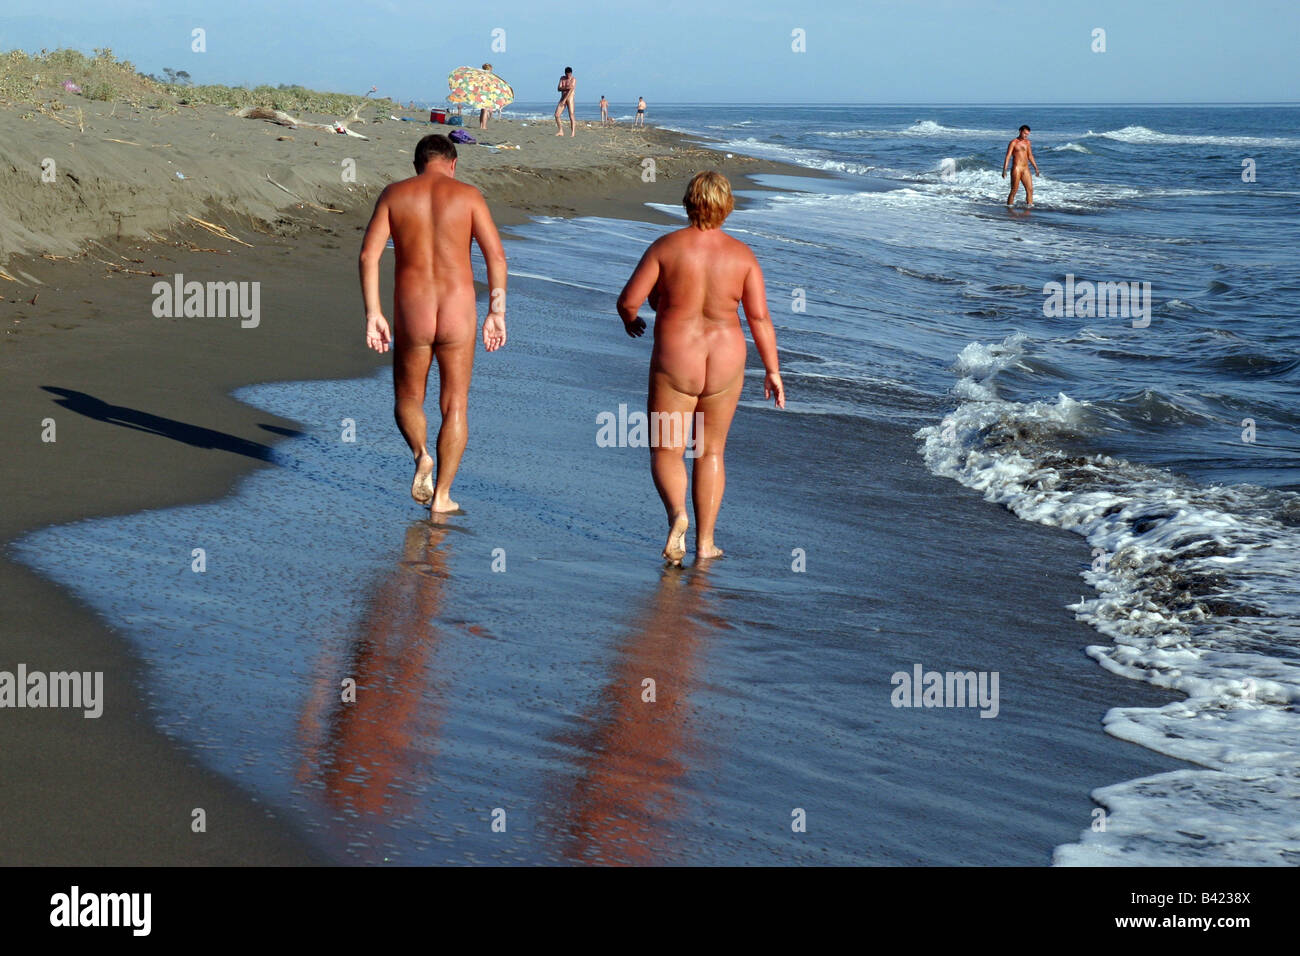 Frauen am fkk strand nackt